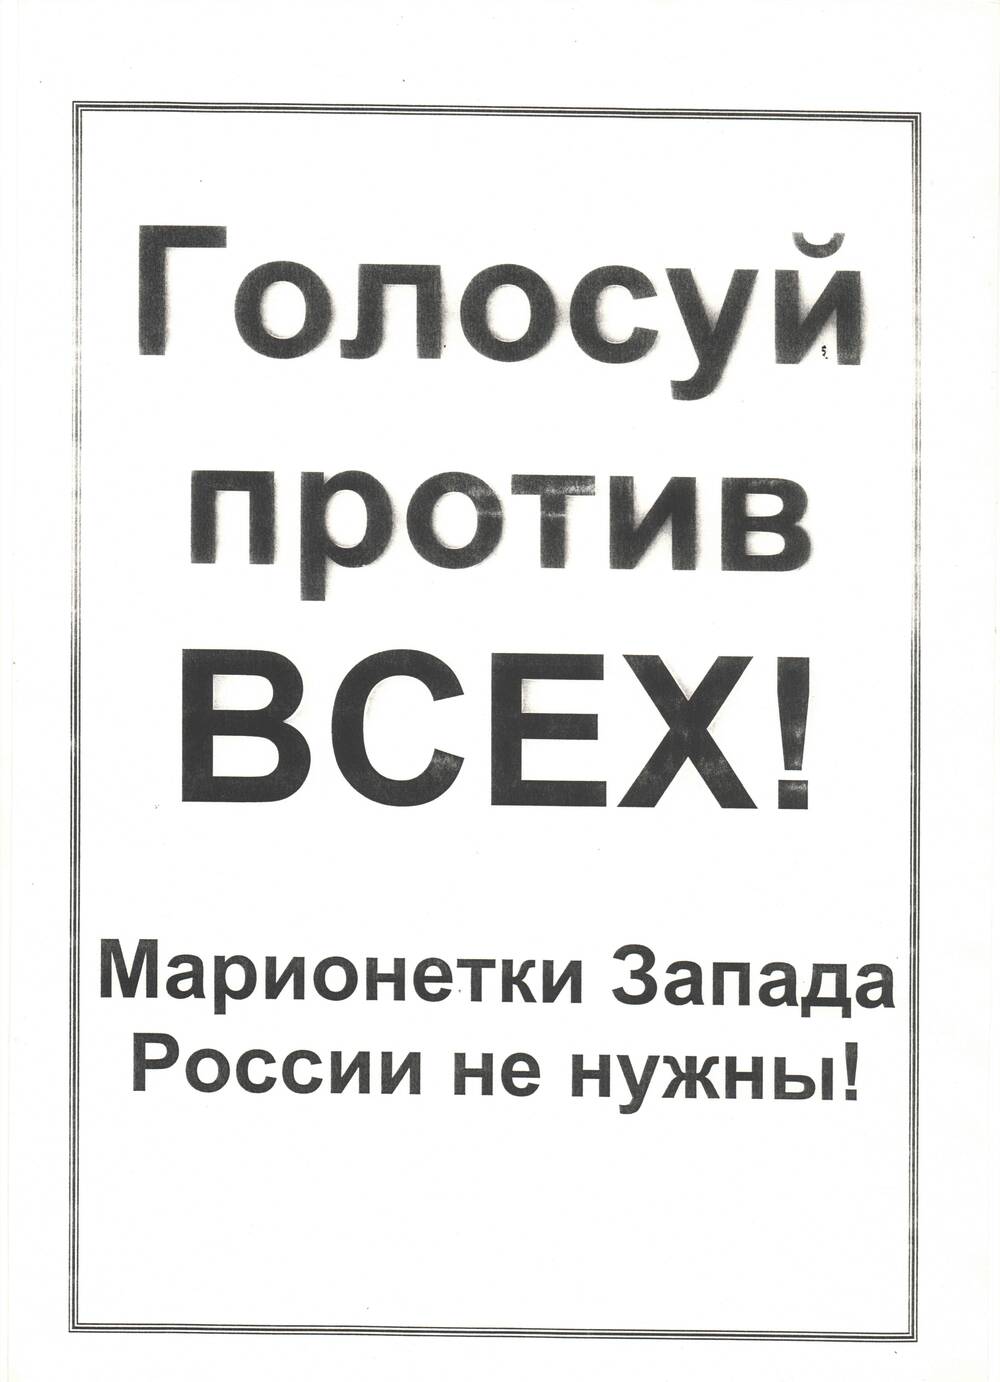 Плакат движения РНЕ.